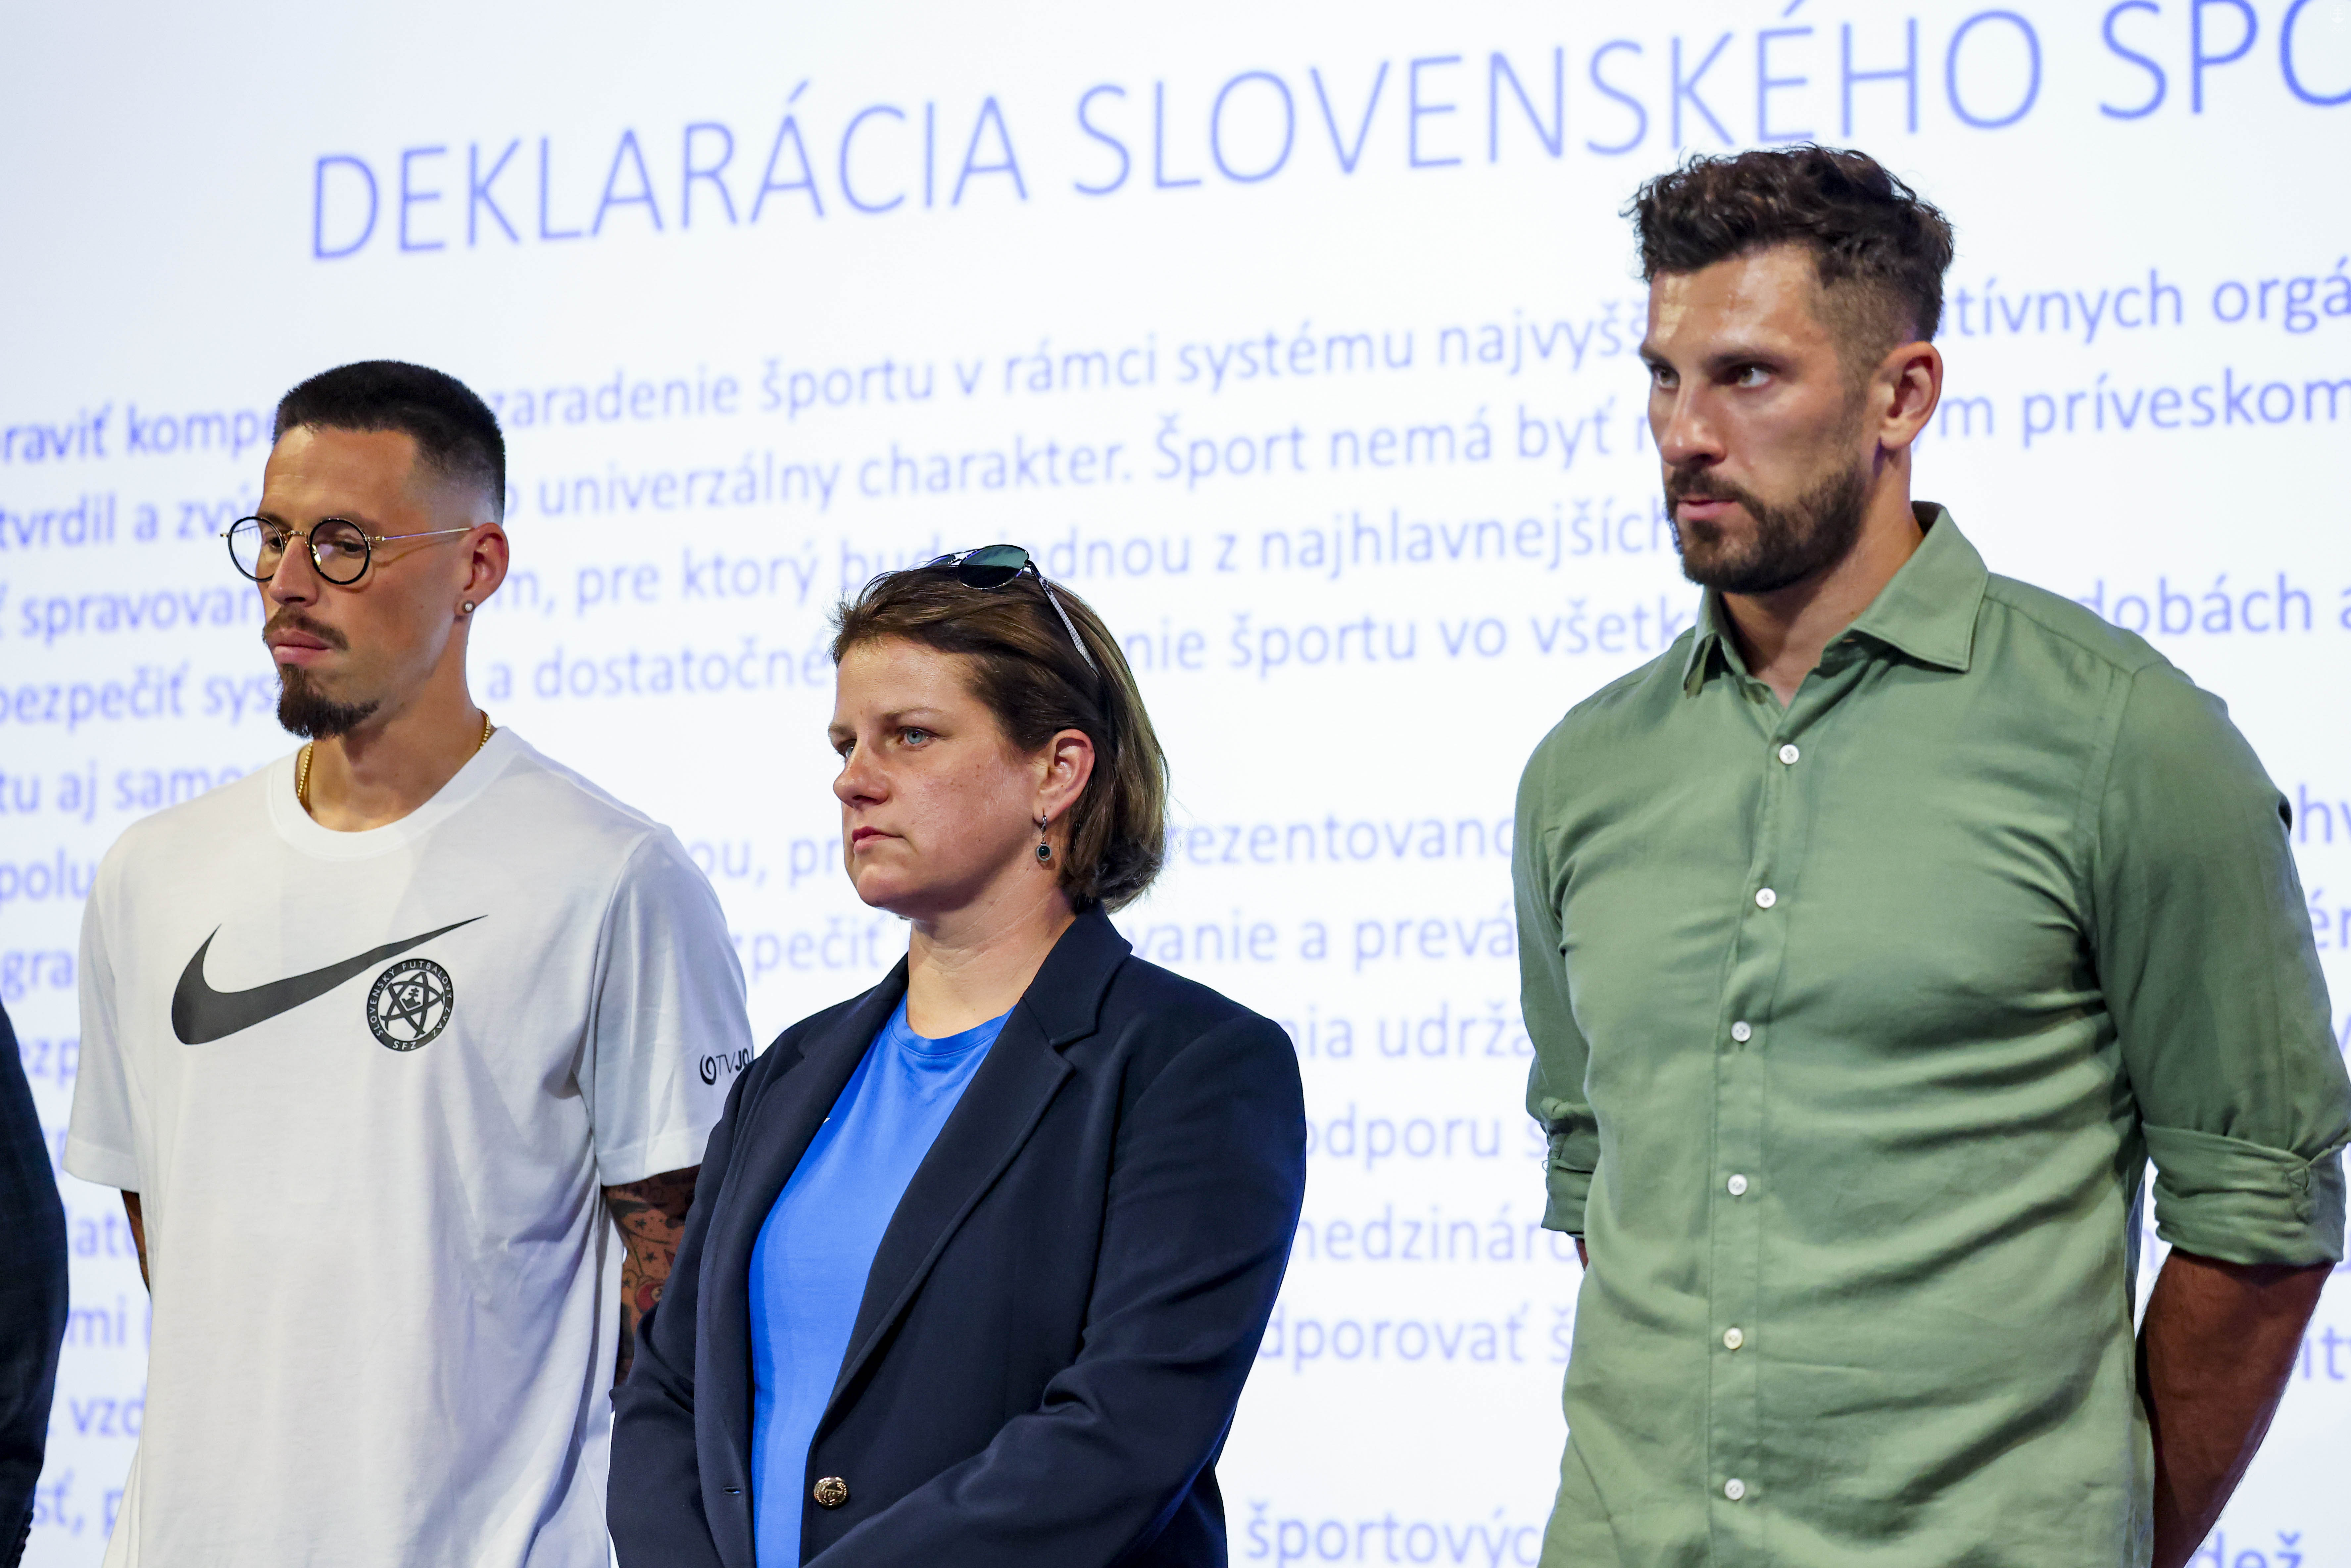 Deklarácia slovenského športu